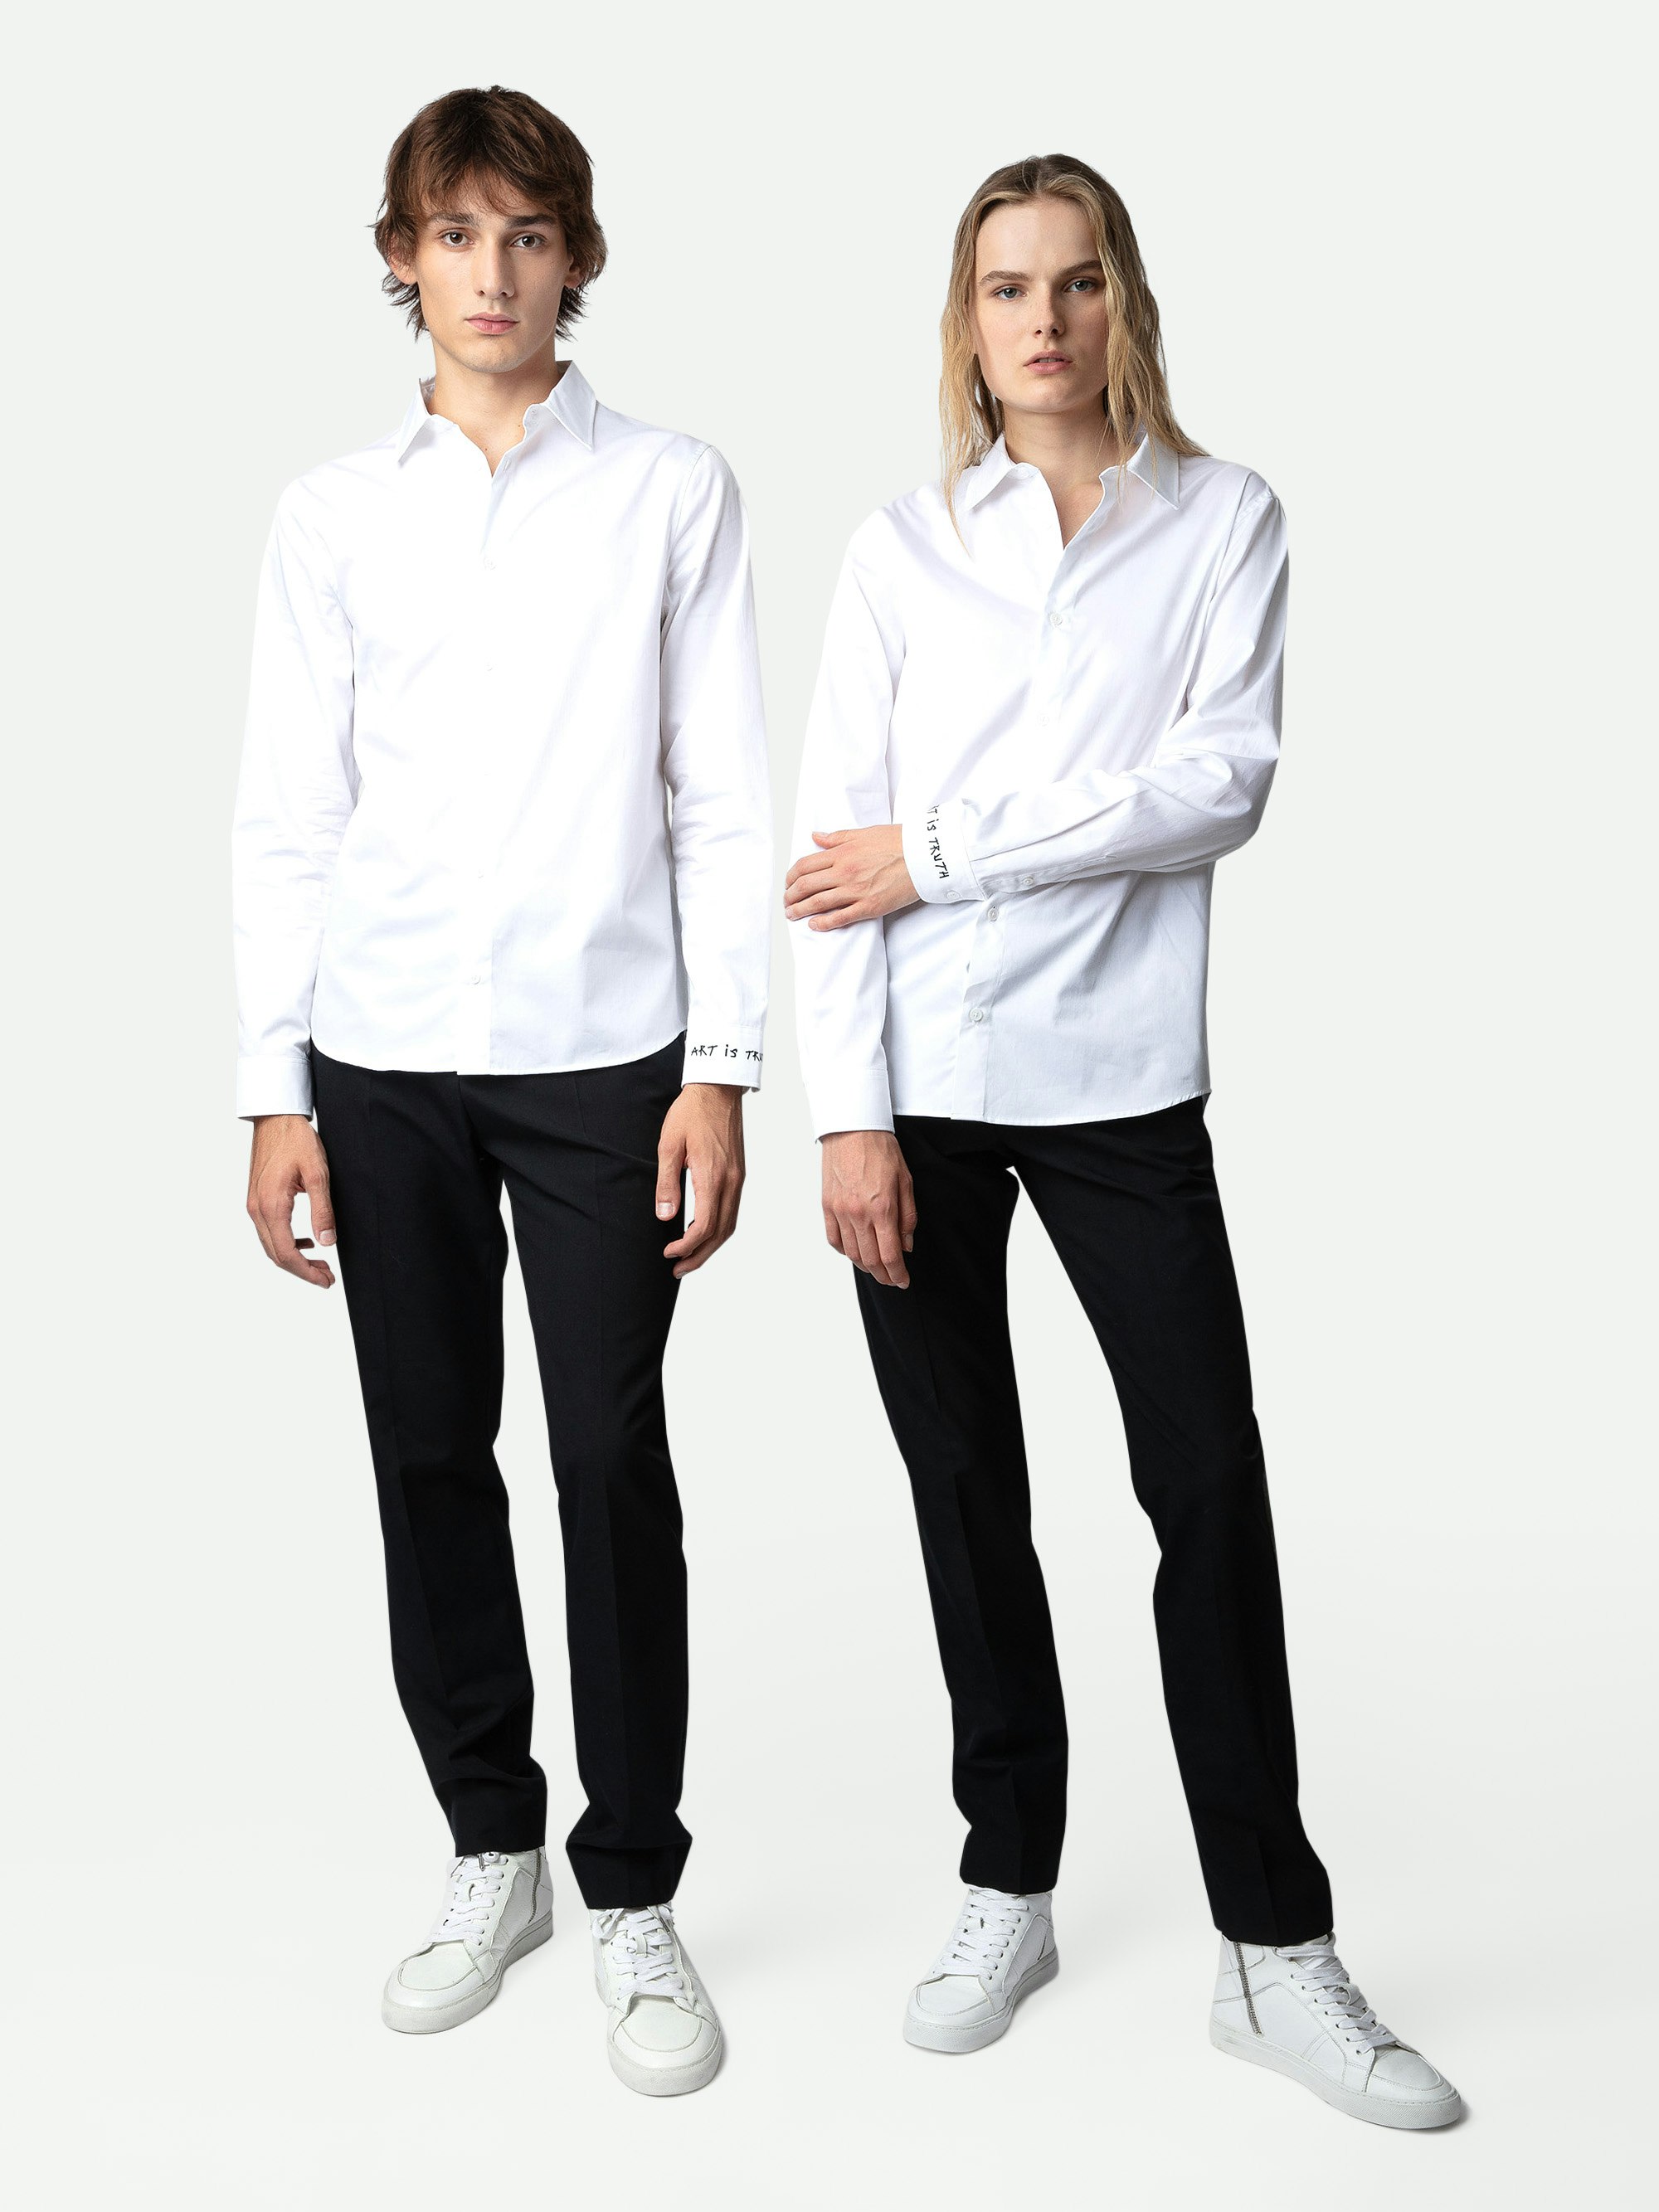 Hemd Sydney - Weißes Unisex-Hemd aus Baumwolle mit Stickerei „Art Is Truth“ an der rechten Manschette.